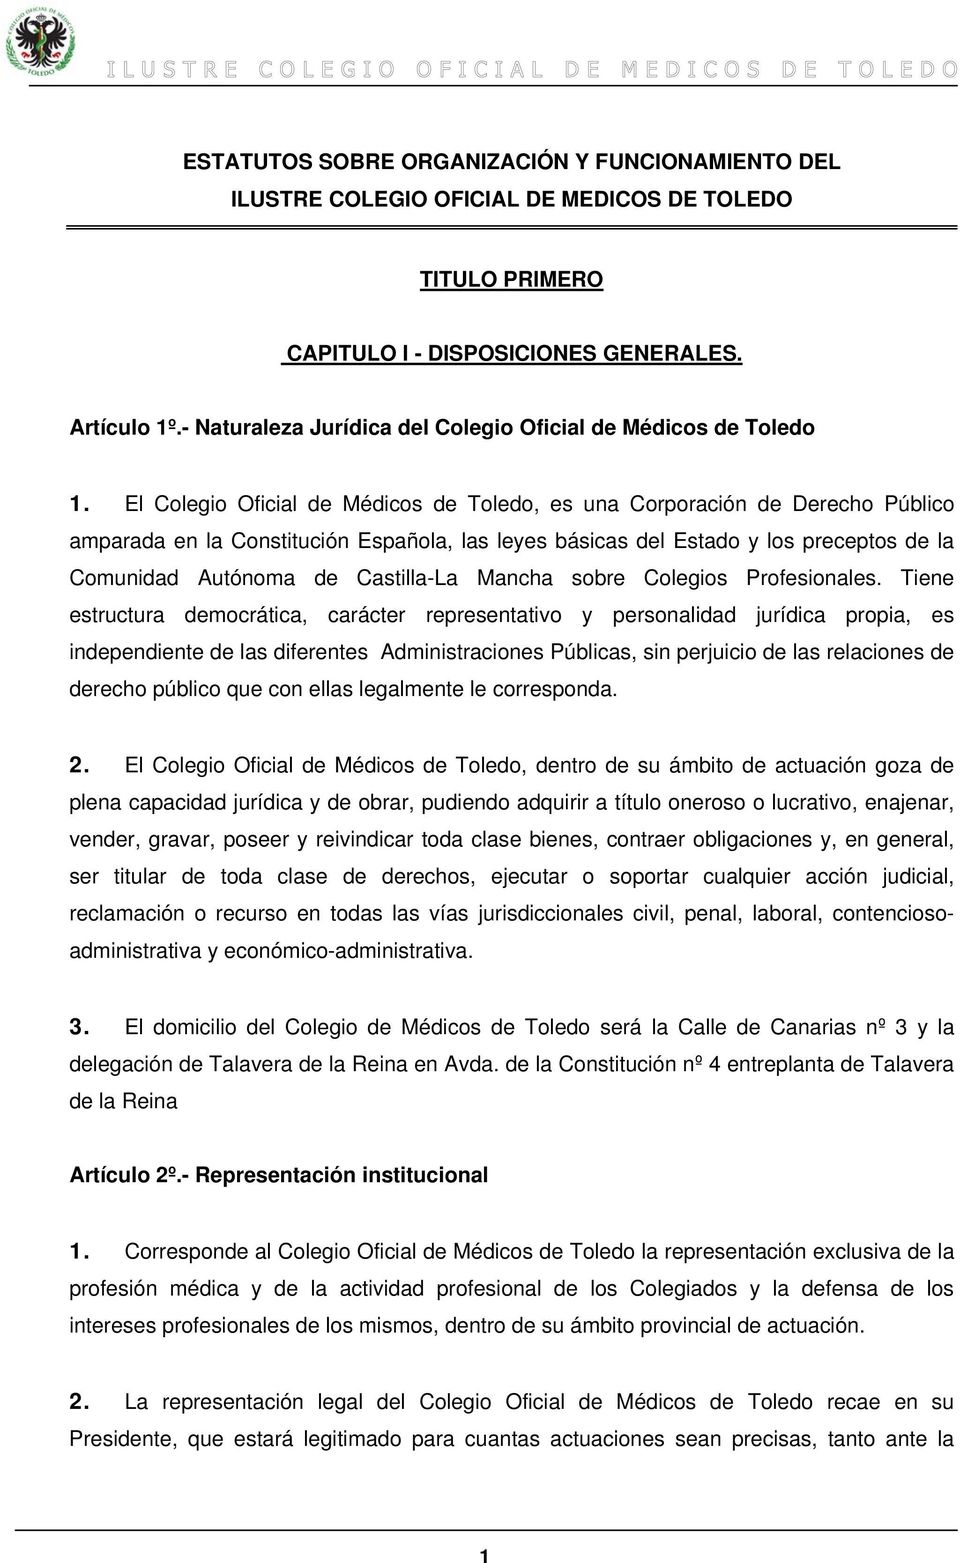 El Colegio Oficial de Médicos de Toledo, es una Corporación de Derecho Público amparada en la Constitución Española, las leyes básicas del Estado y los preceptos de la Comunidad Autónoma de